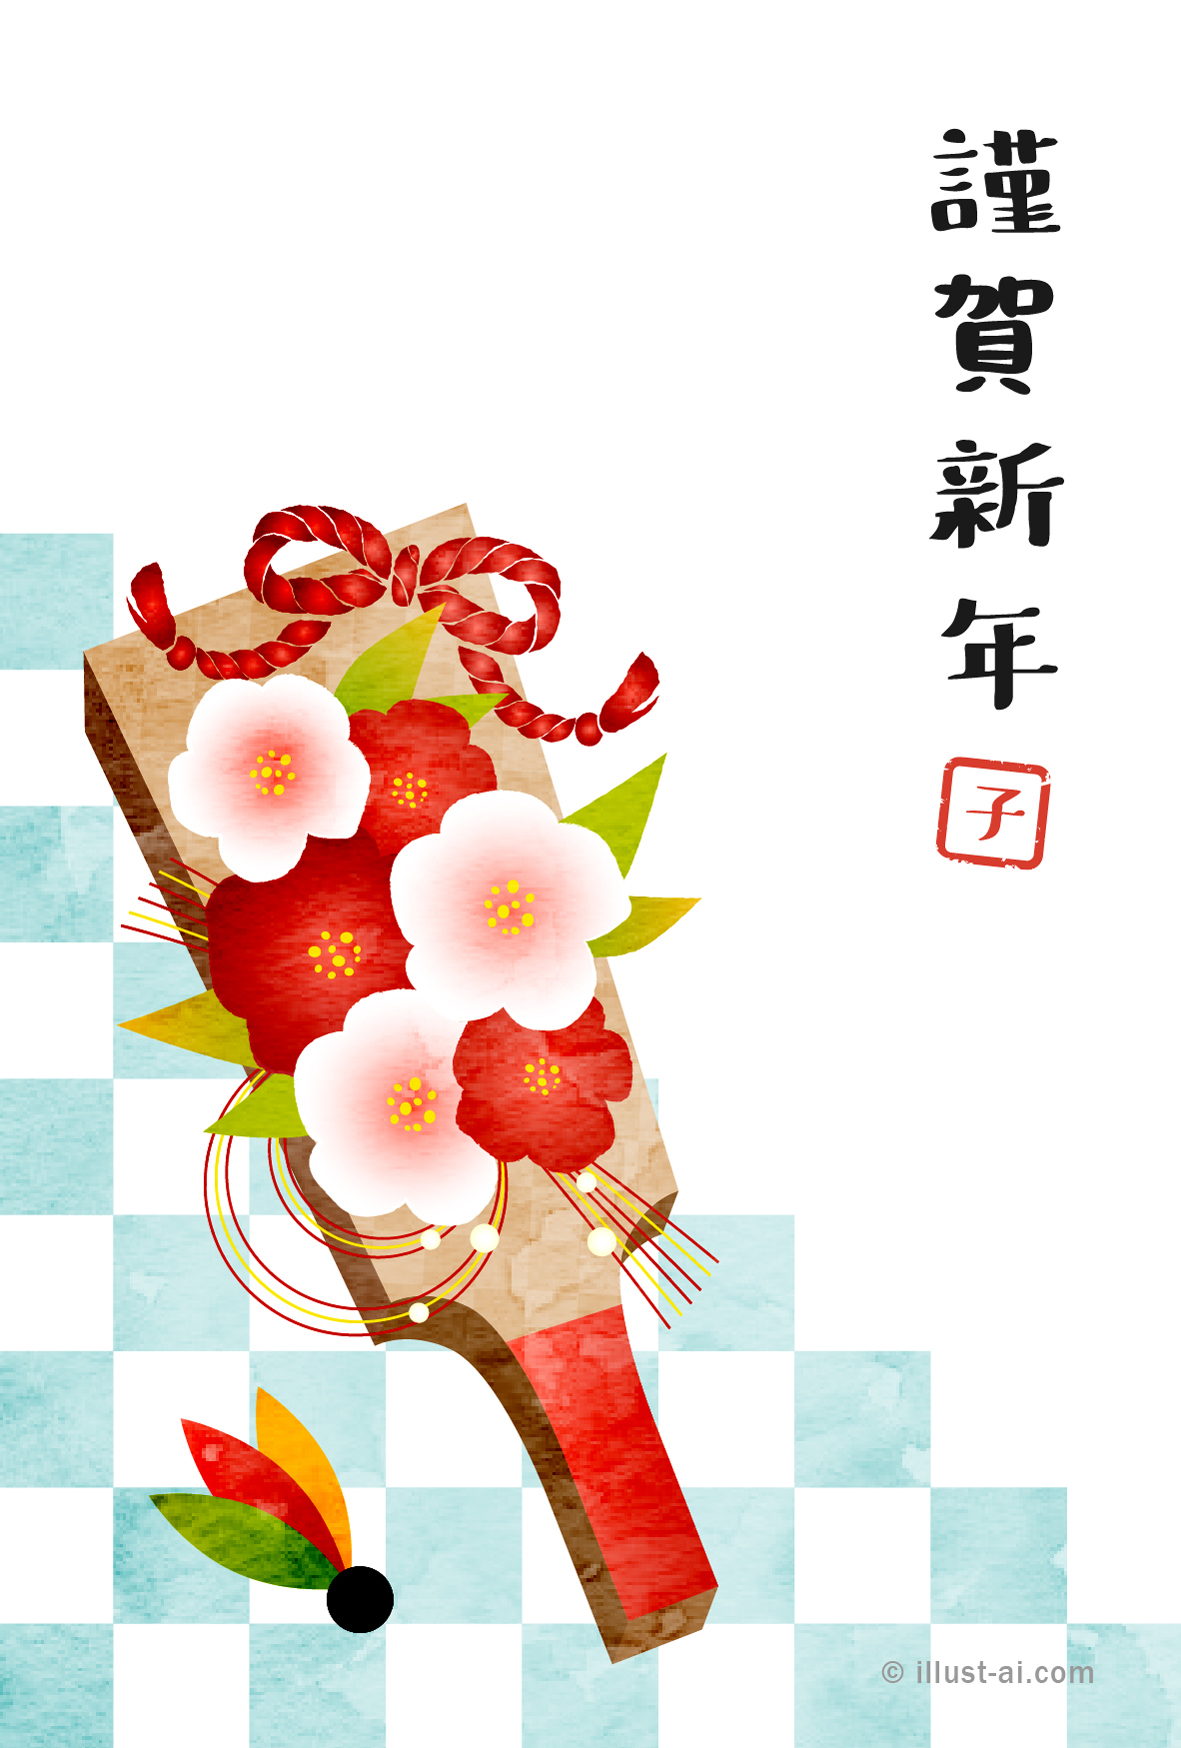 年賀状 寅年 椿の花飾り羽子板とさわやかな水色の市松模様 年賀状22無料イラスト素材集